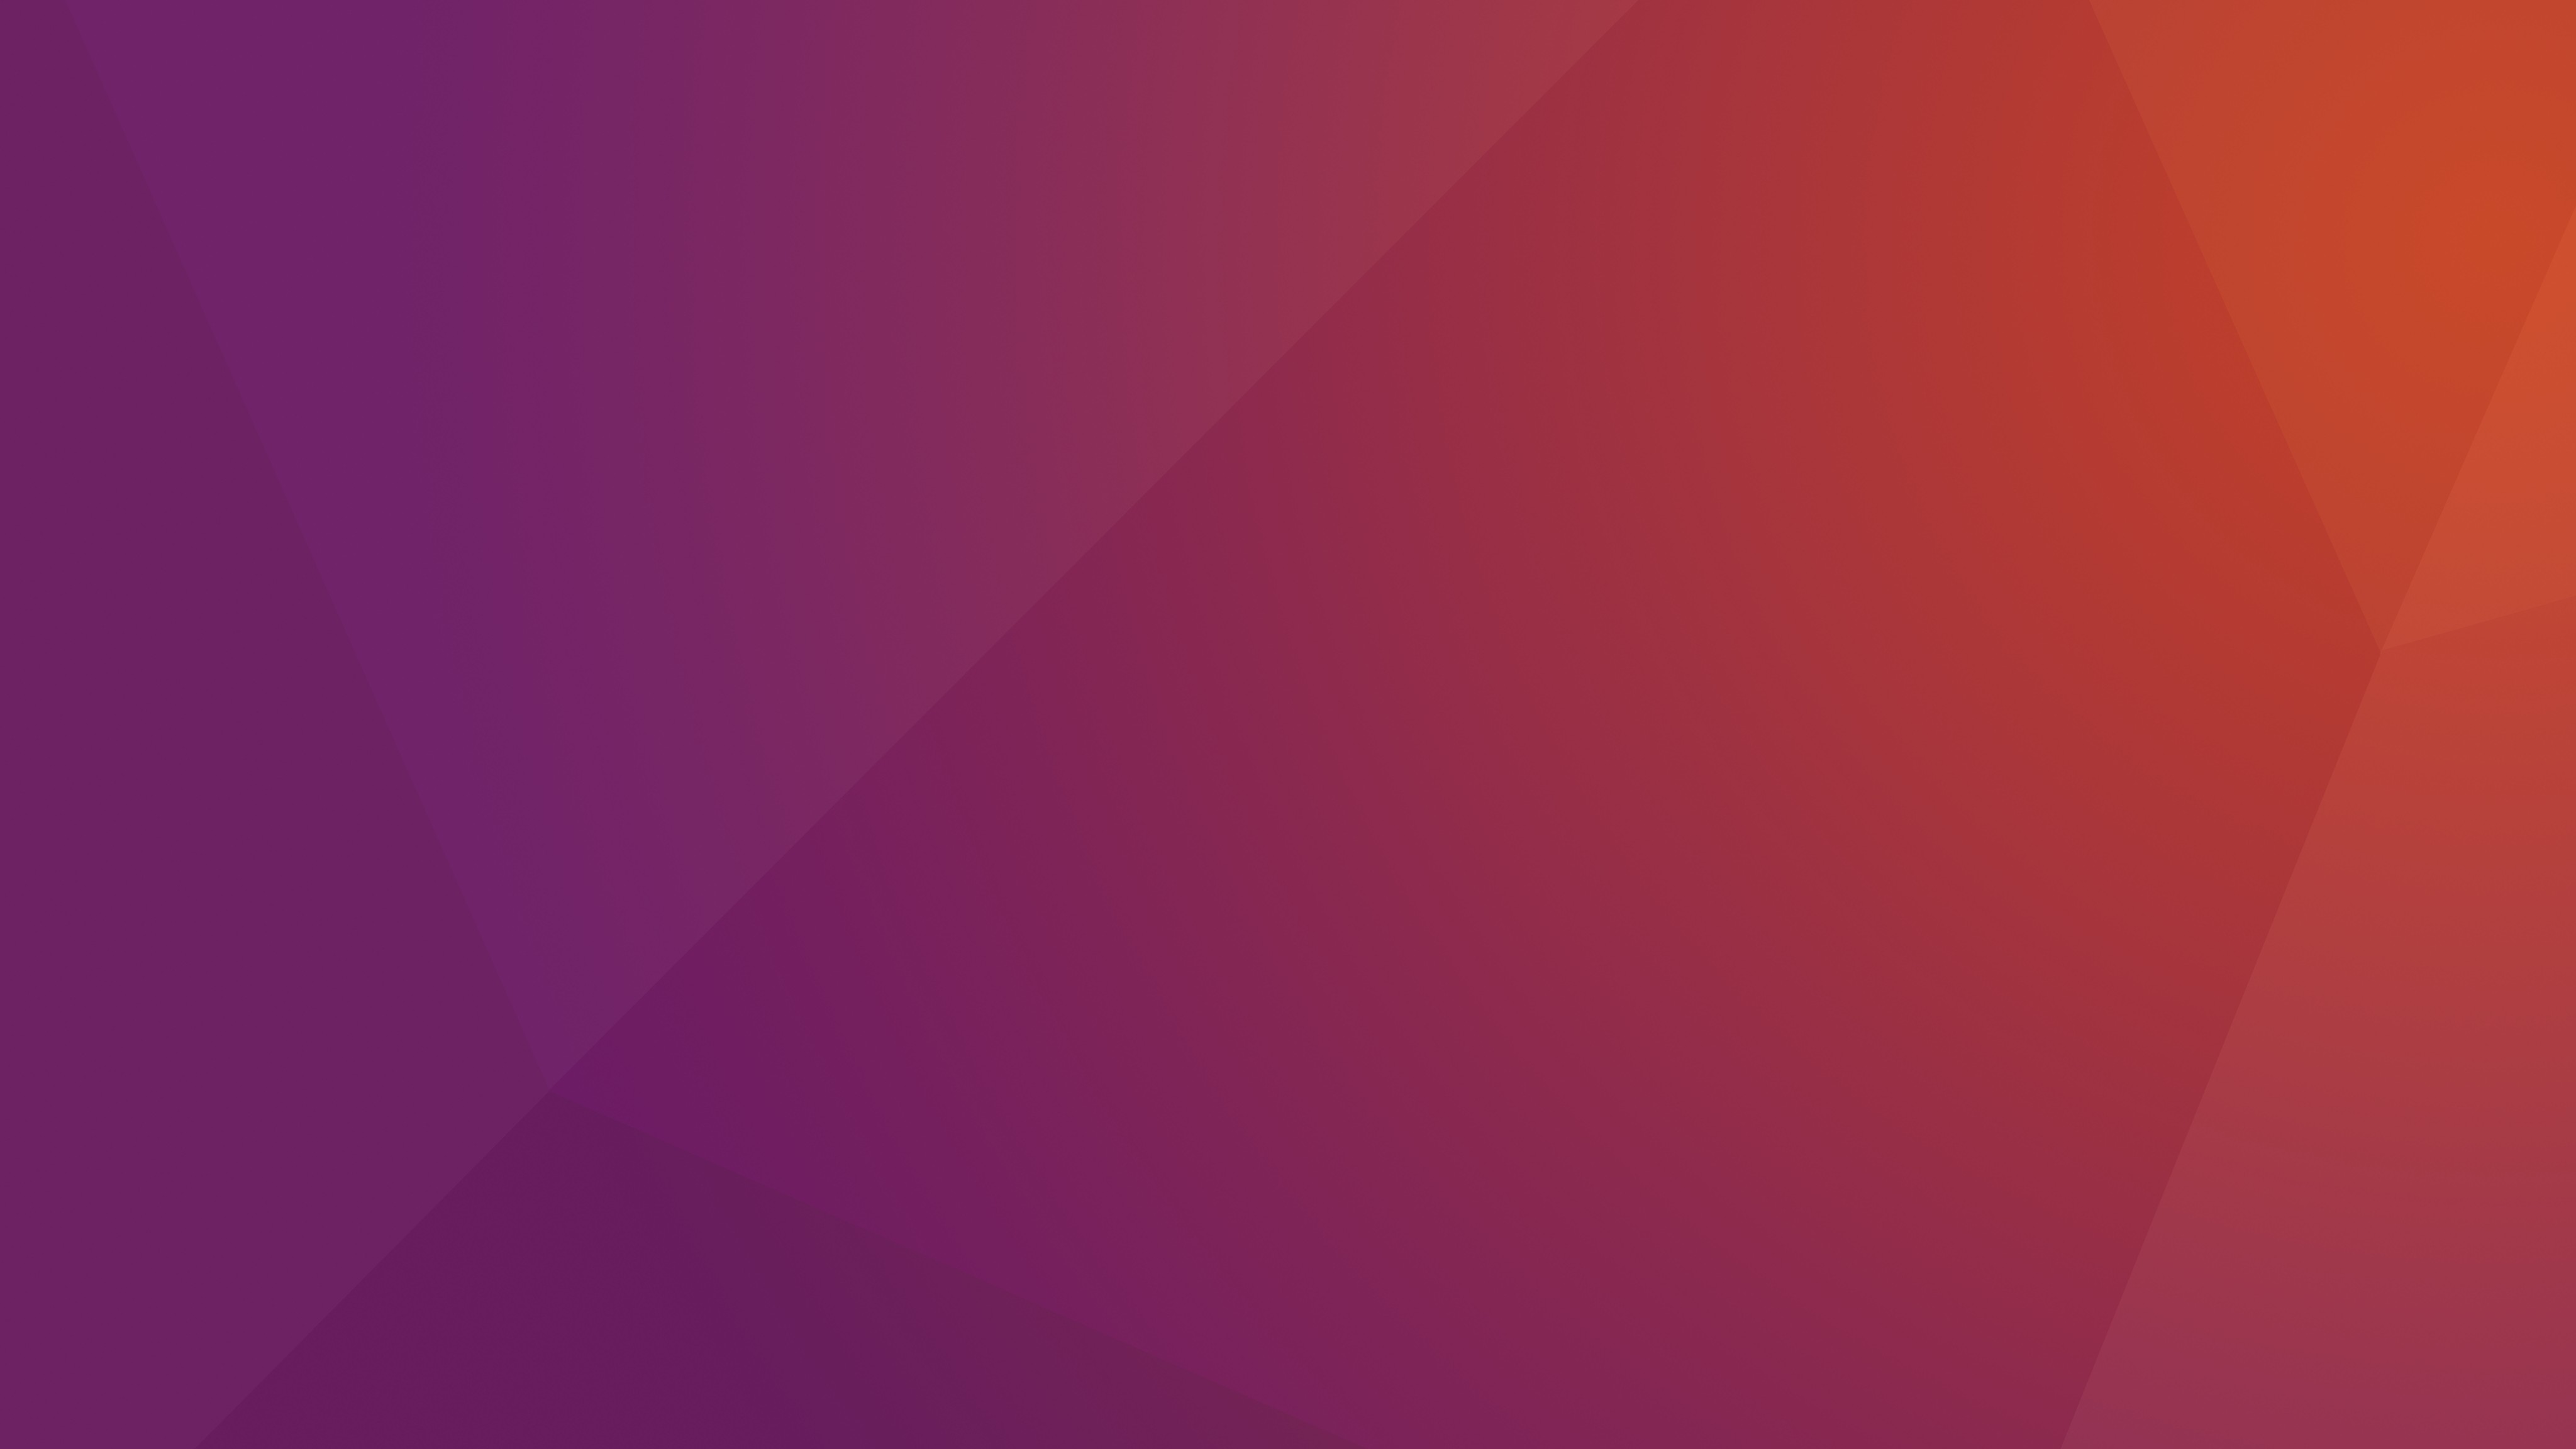 Bạn rất thích Ubuntu và đang tìm kiếm những hình nền đẹp mắt để tùy chỉnh cho máy tính? Vậy thì hãy tải miễn phí bộ sưu tập Ubuntu 1604 LTS Wallpapers chất lượng đến từ Ubuntu chính thức. Hình ảnh độ phân giải cao, rực rỡ sắc màu sẽ làm bạn thỏa mãn mọi yêu cầu của mình.